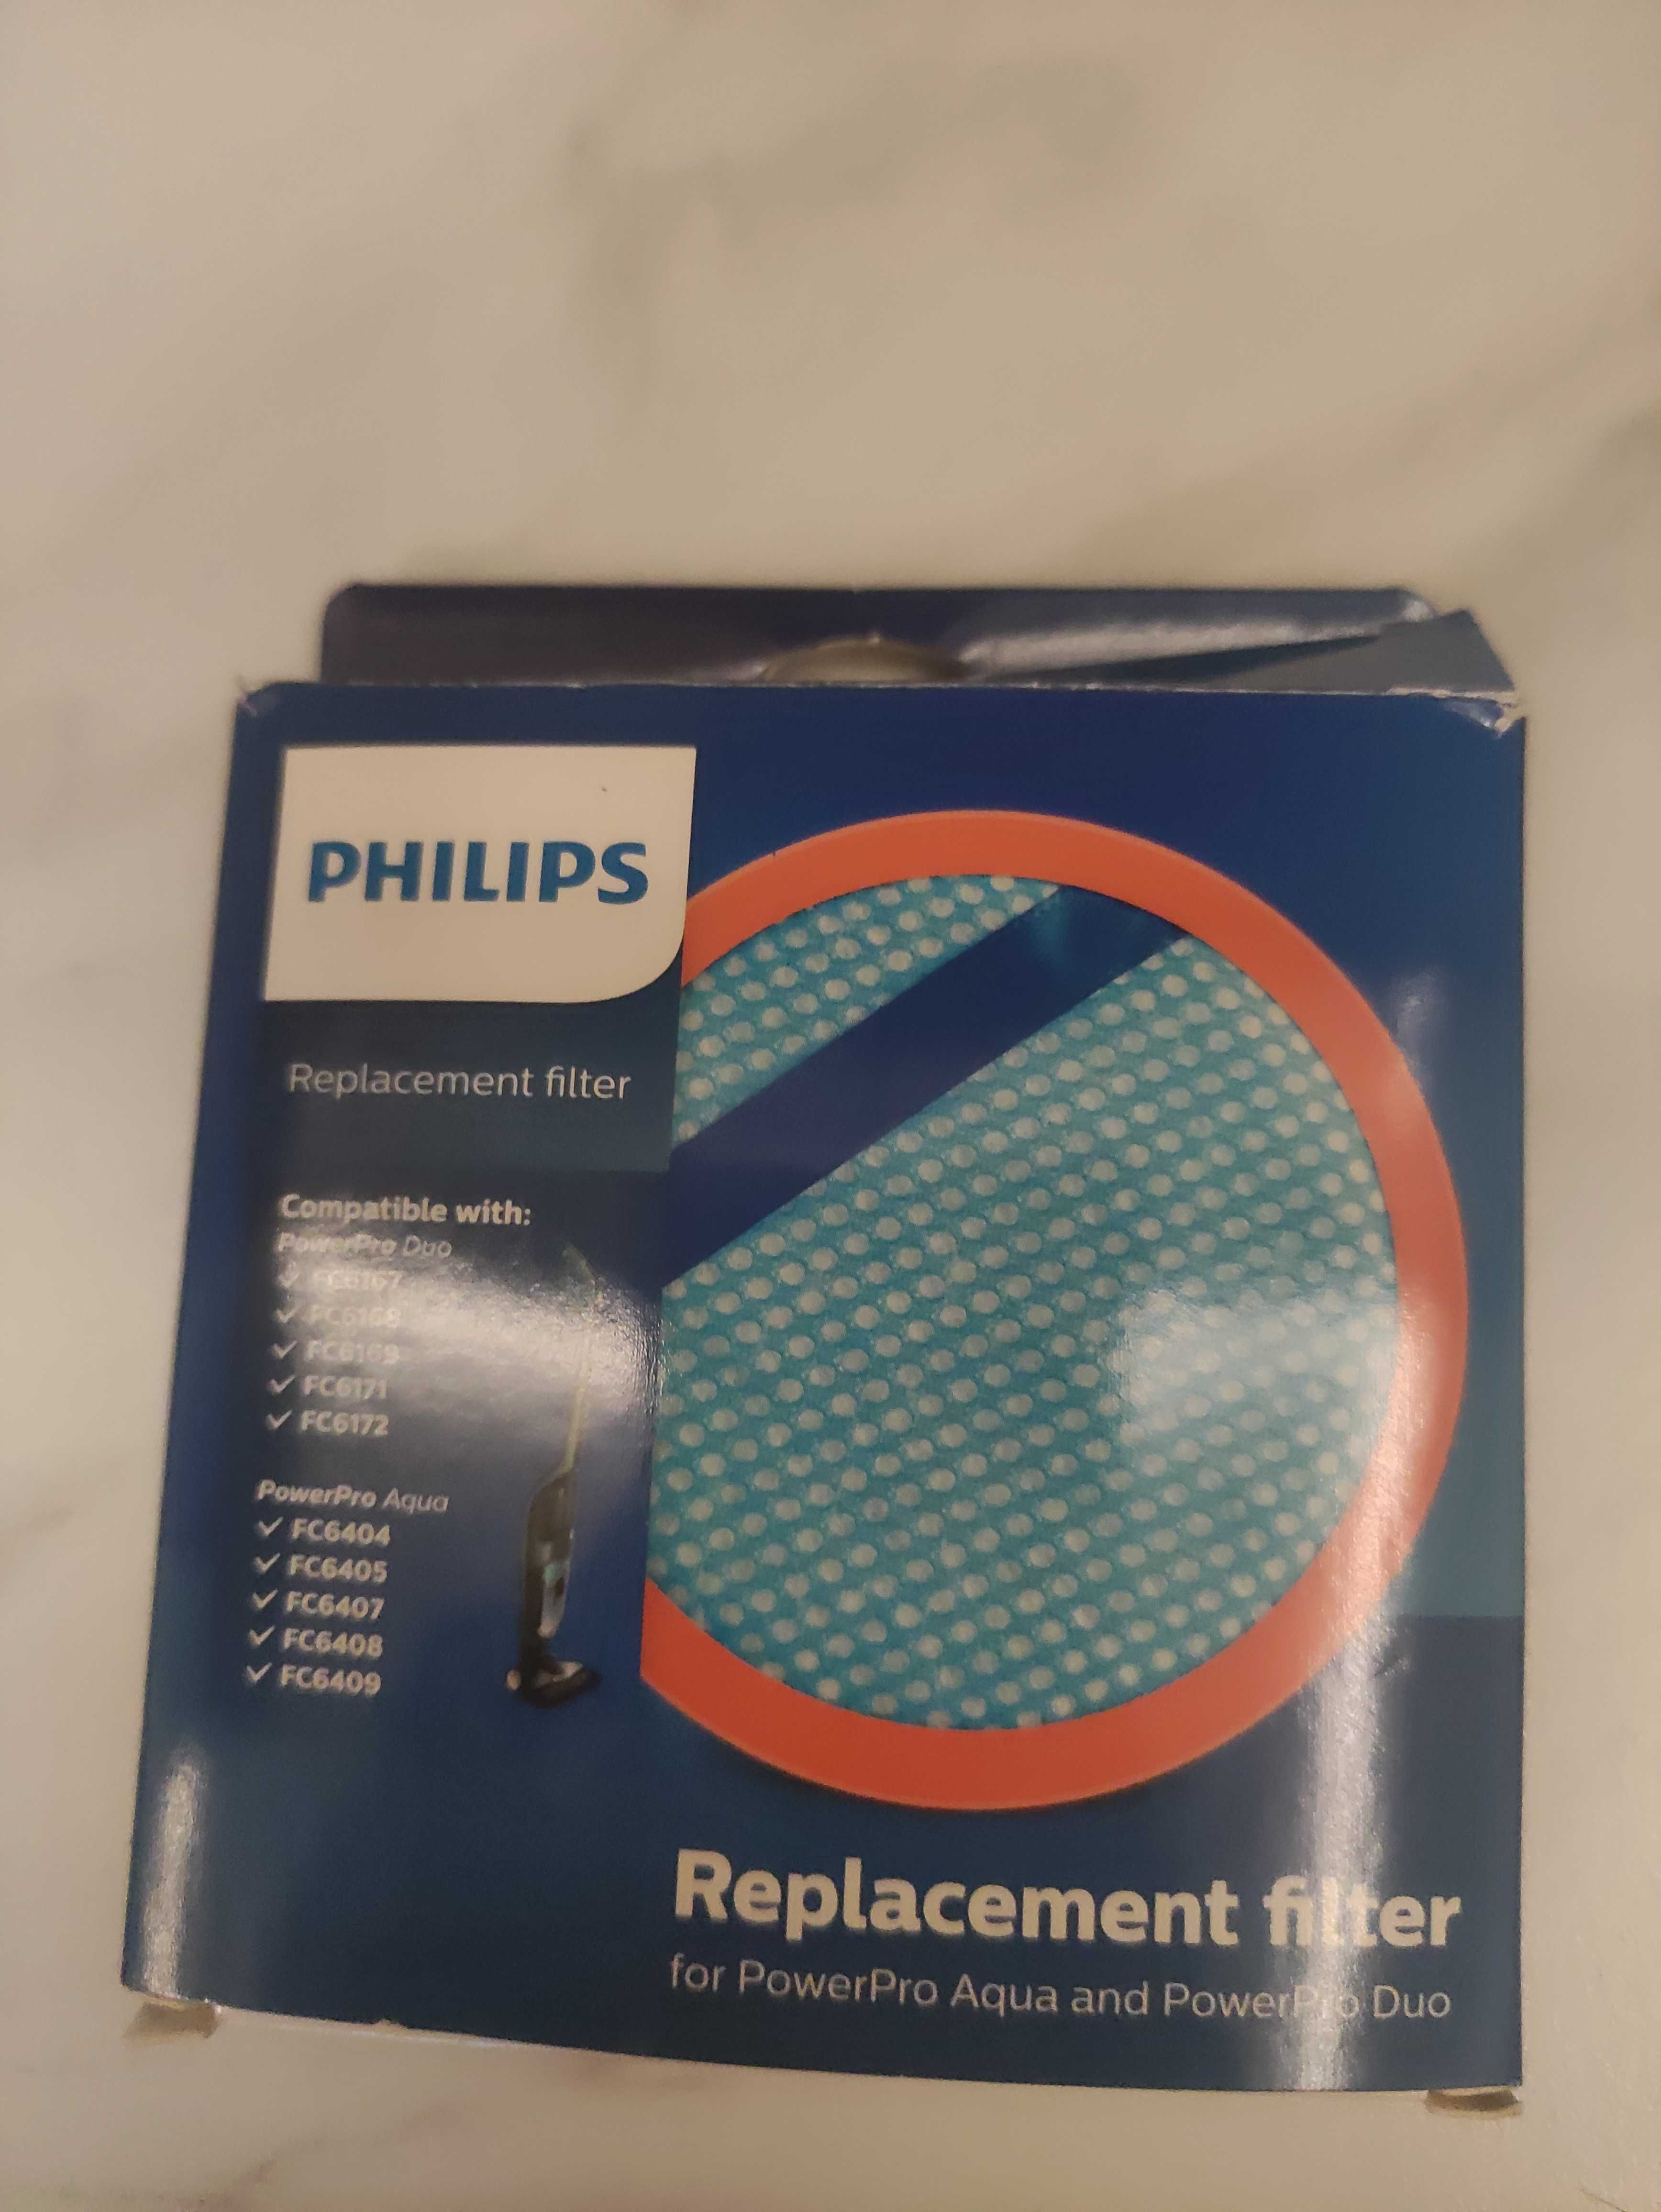 Filtr Philips do odkurzacza